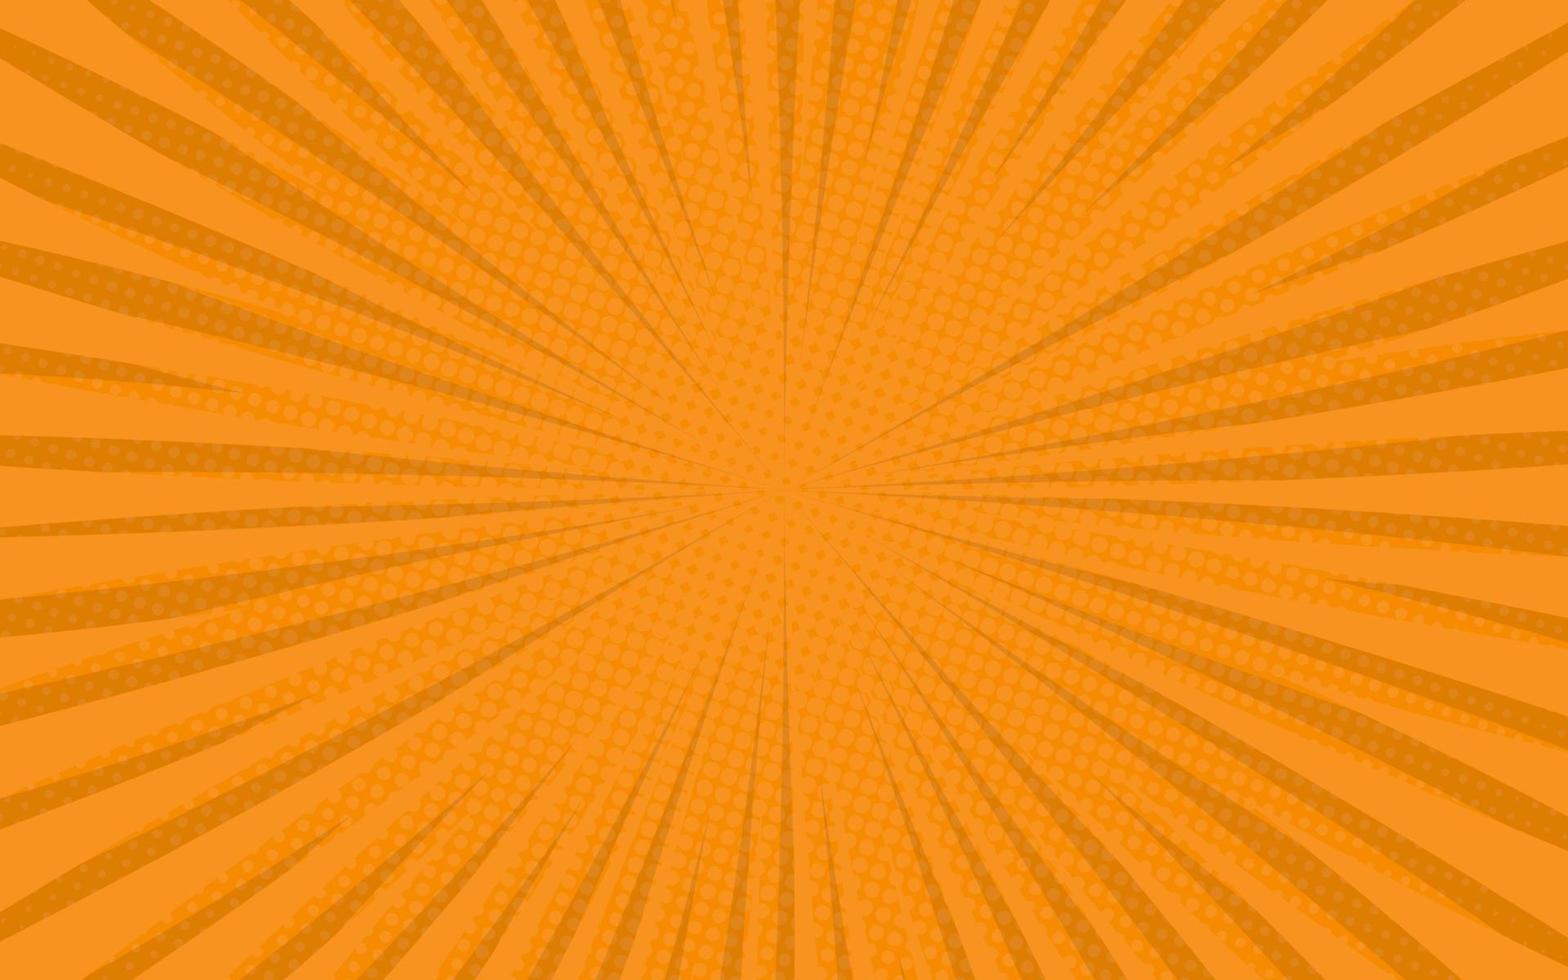 Sonnenstrahlen Retro-Vintage-Stil auf orangem Hintergrund. Comic-Muster mit Starburst und Halbton. Cartoon-Retro-Sunburst-Effekt mit Punkten. Sommer-Banner-Vektor-Illustration vektor